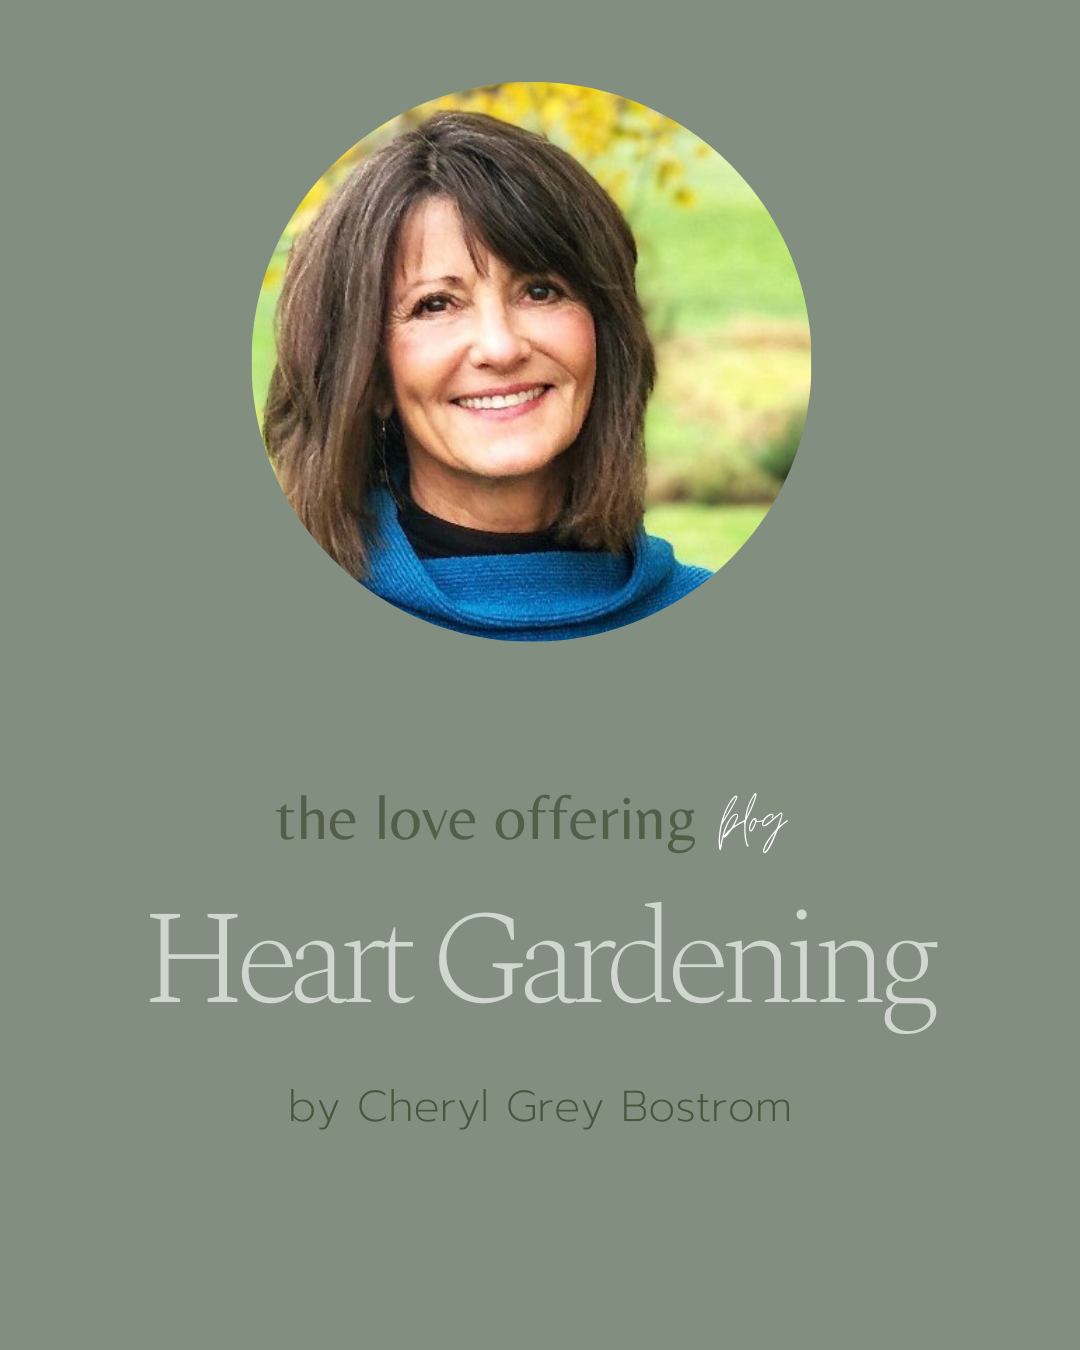 Heart Gardening by Cheryl Grey Bostrom